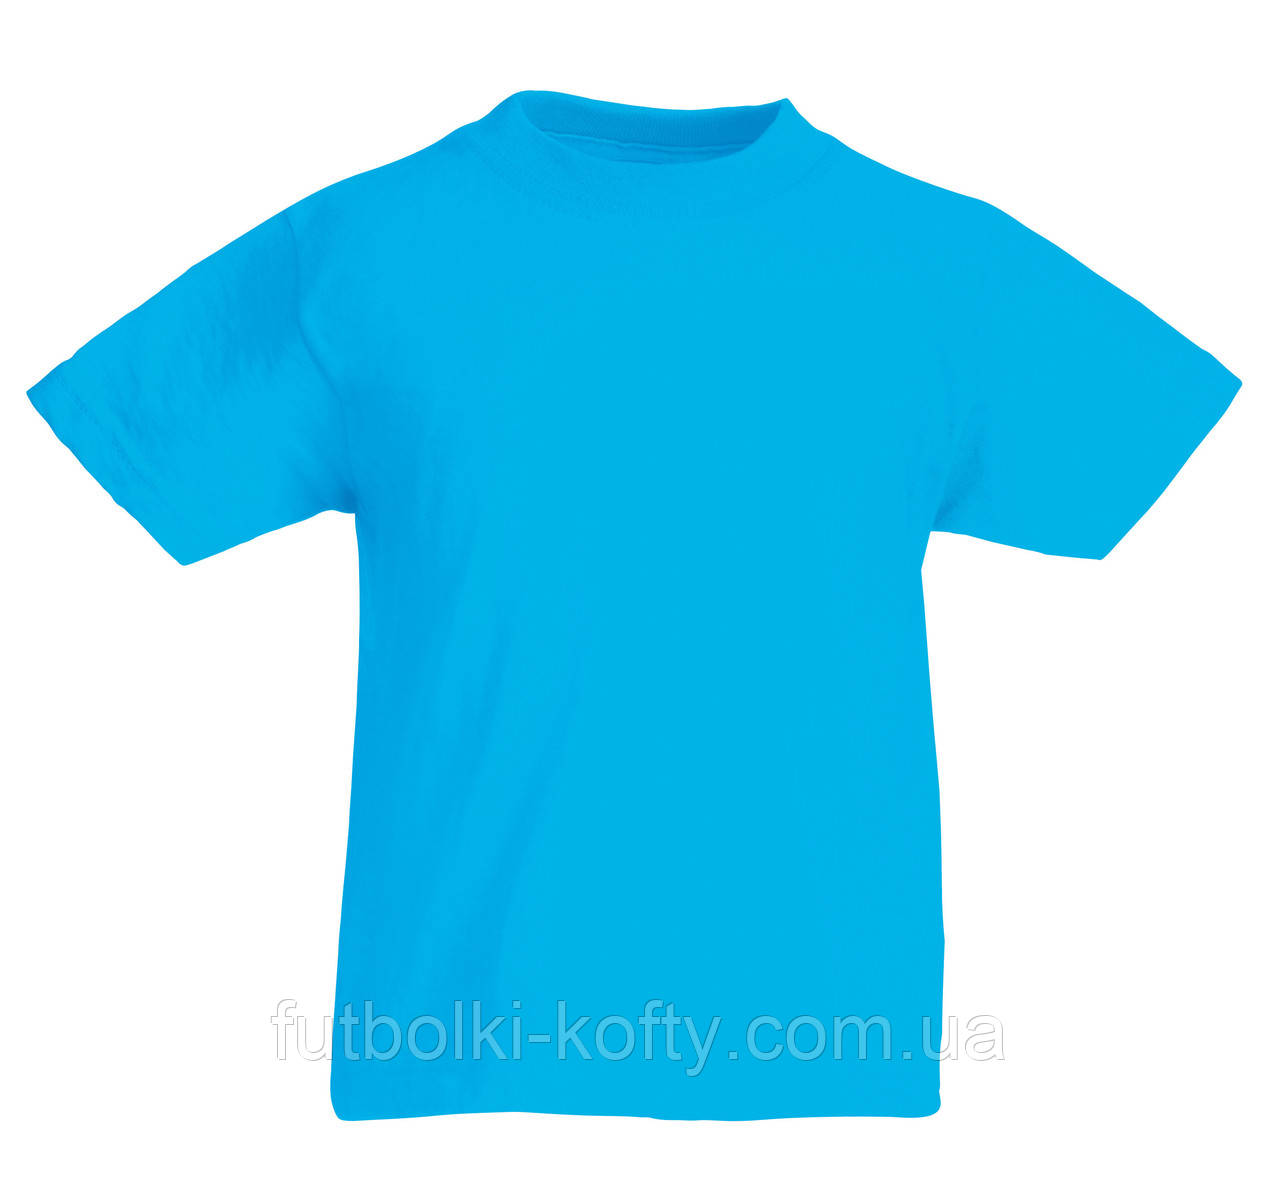 Дитяча футболка для хлопчиків 100 бавовна вільна Колір Ультрамарин Розмір 14-15 61-033-ZU 14-15